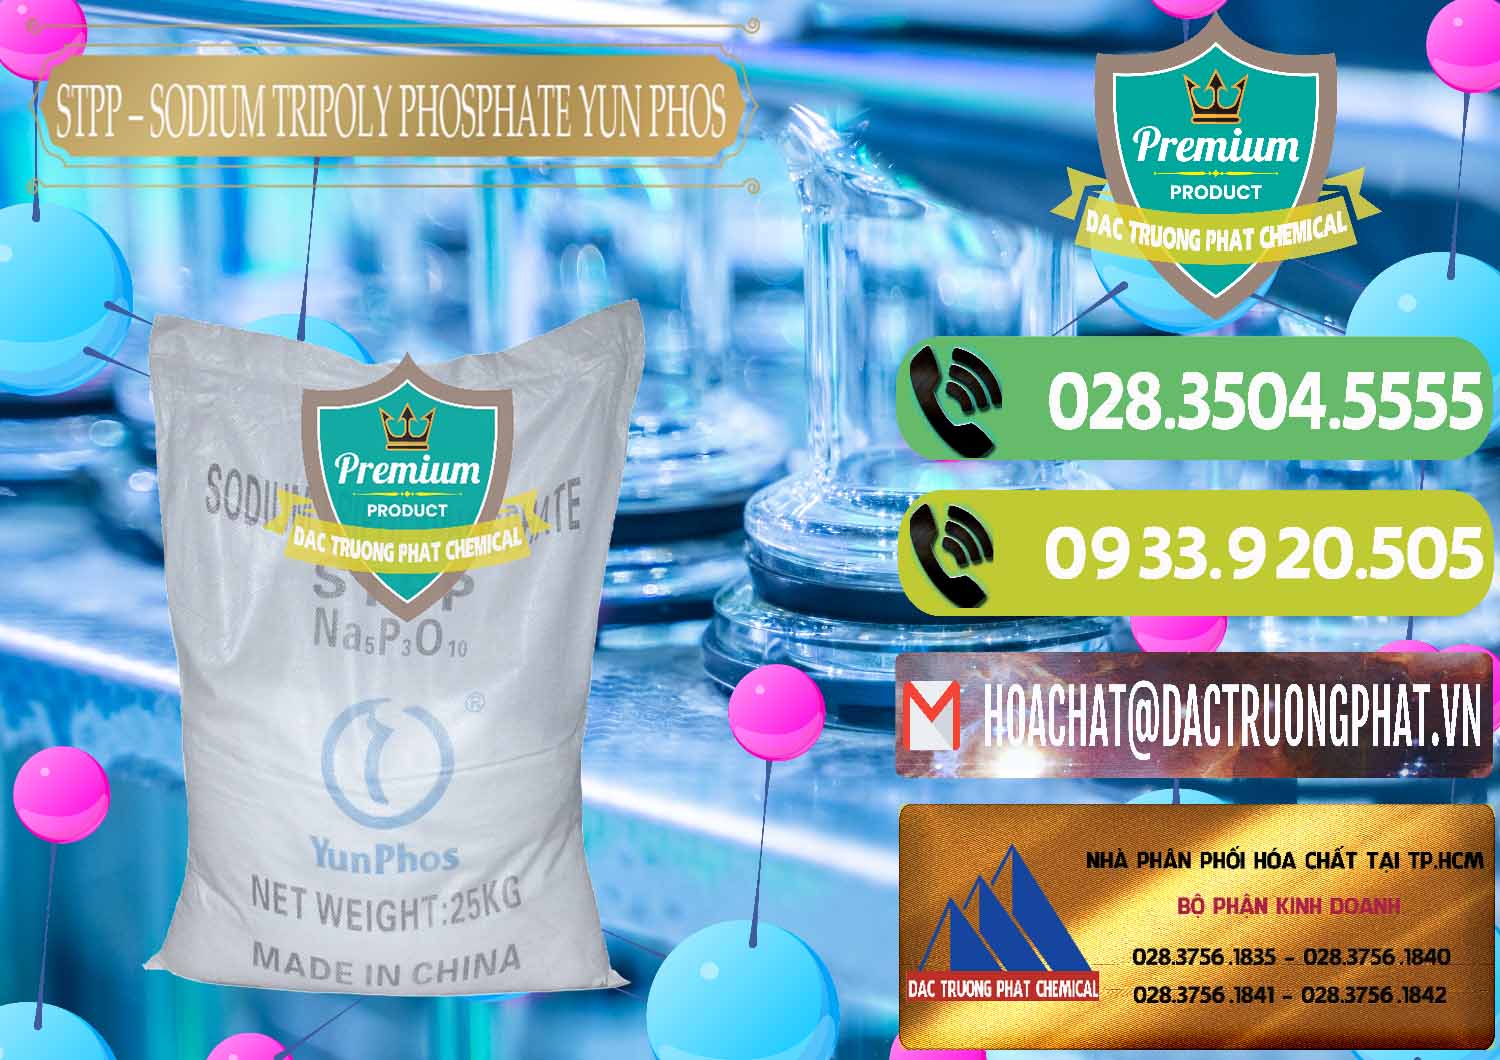 Nơi chuyên bán ( cung cấp ) Sodium Tripoly Phosphate - STPP Yun Phos Trung Quốc China - 0153 - Công ty cung cấp ( nhập khẩu ) hóa chất tại TP.HCM - hoachatmientay.vn